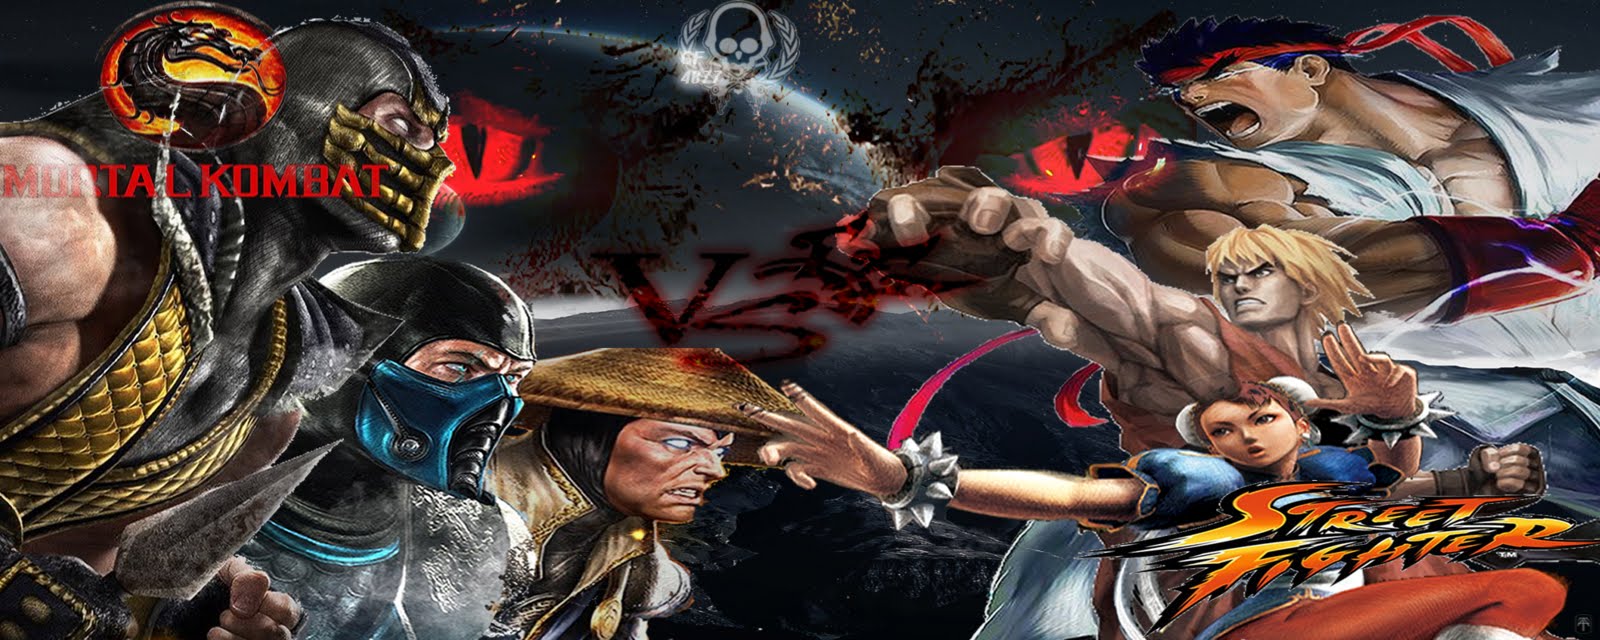 Mortal kombat vs street fighter